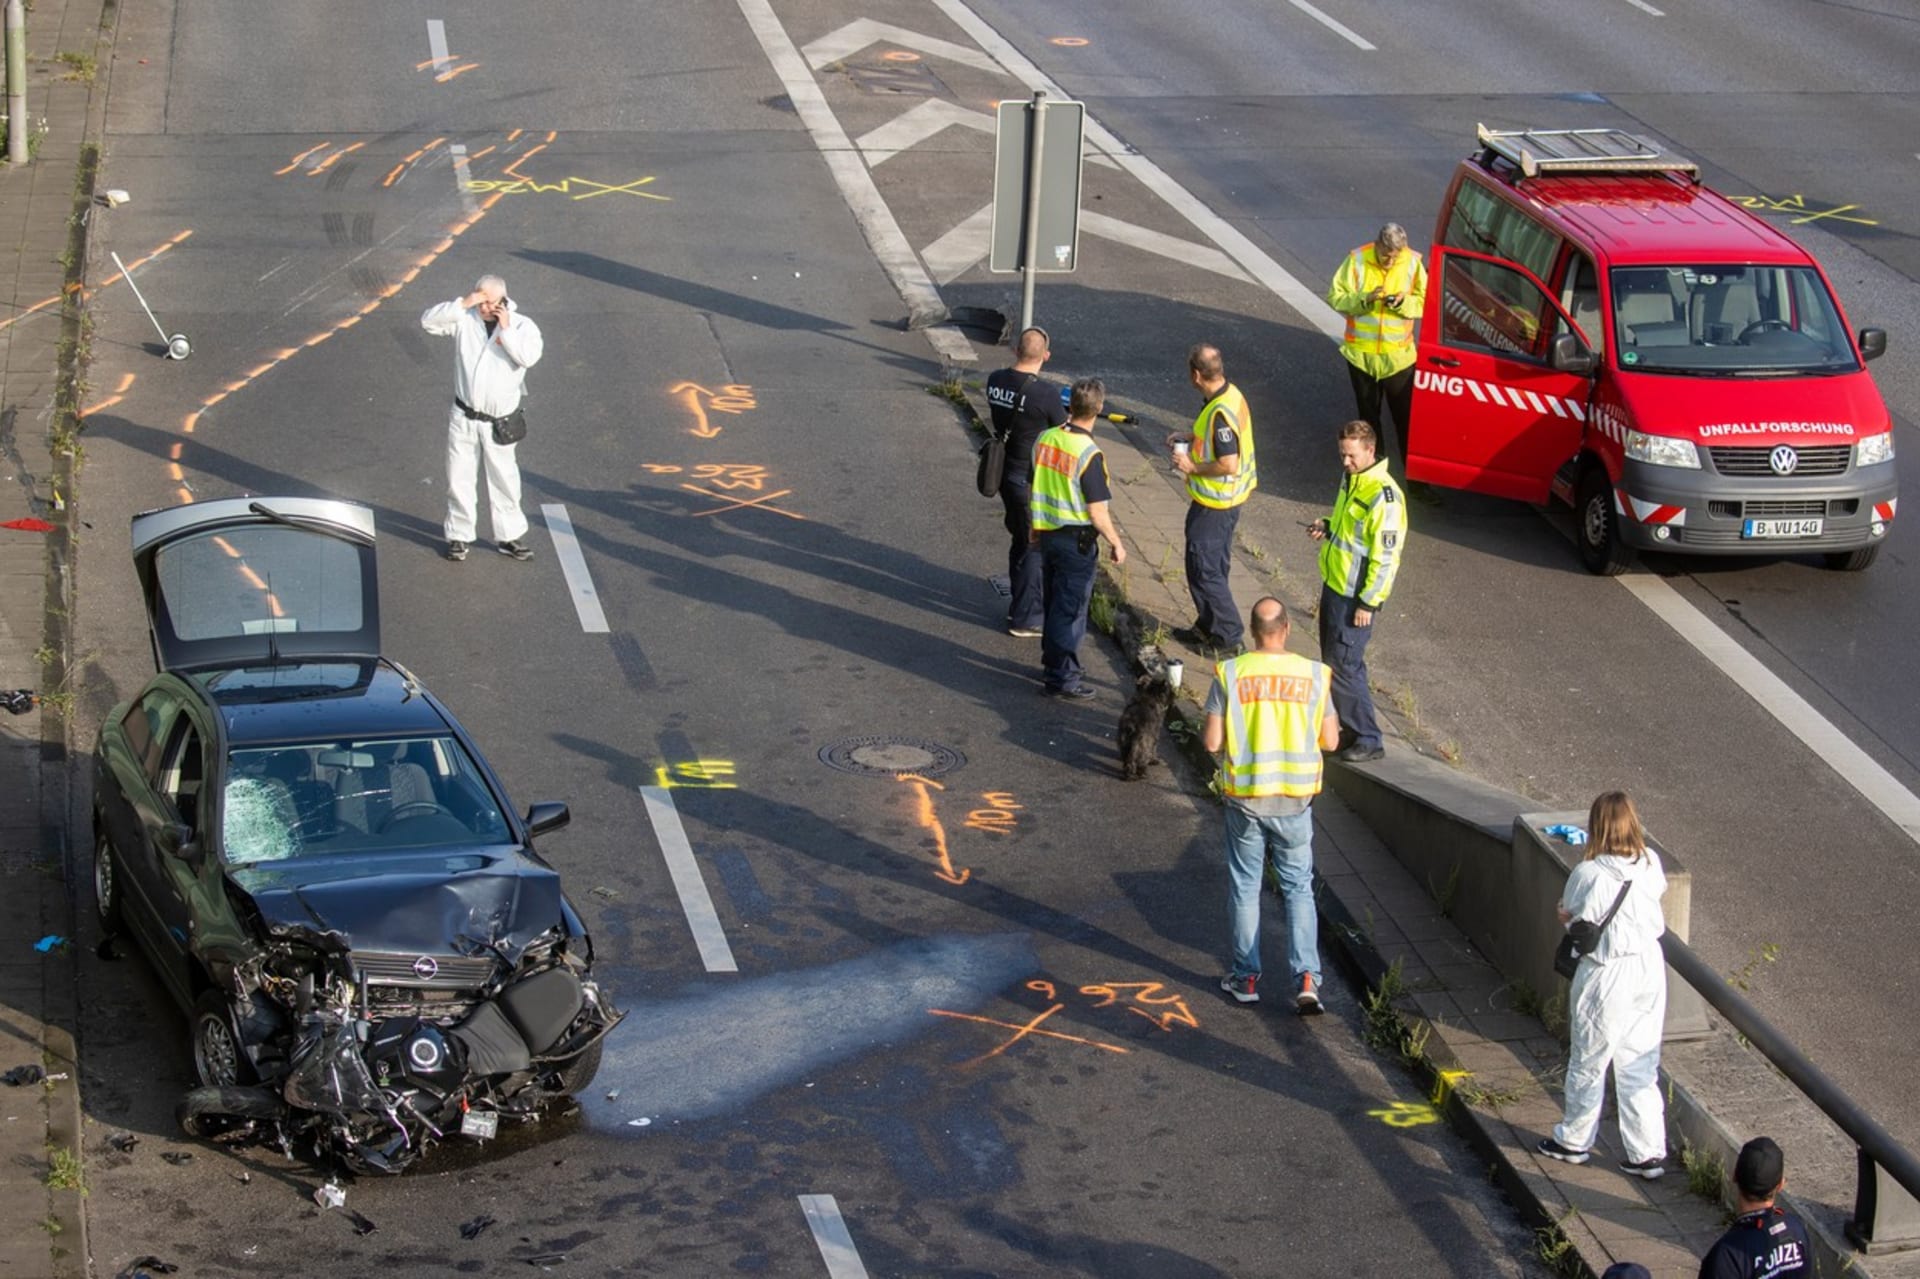 Nehody na dálnici v Berlíně způsobil možná radikální islamista